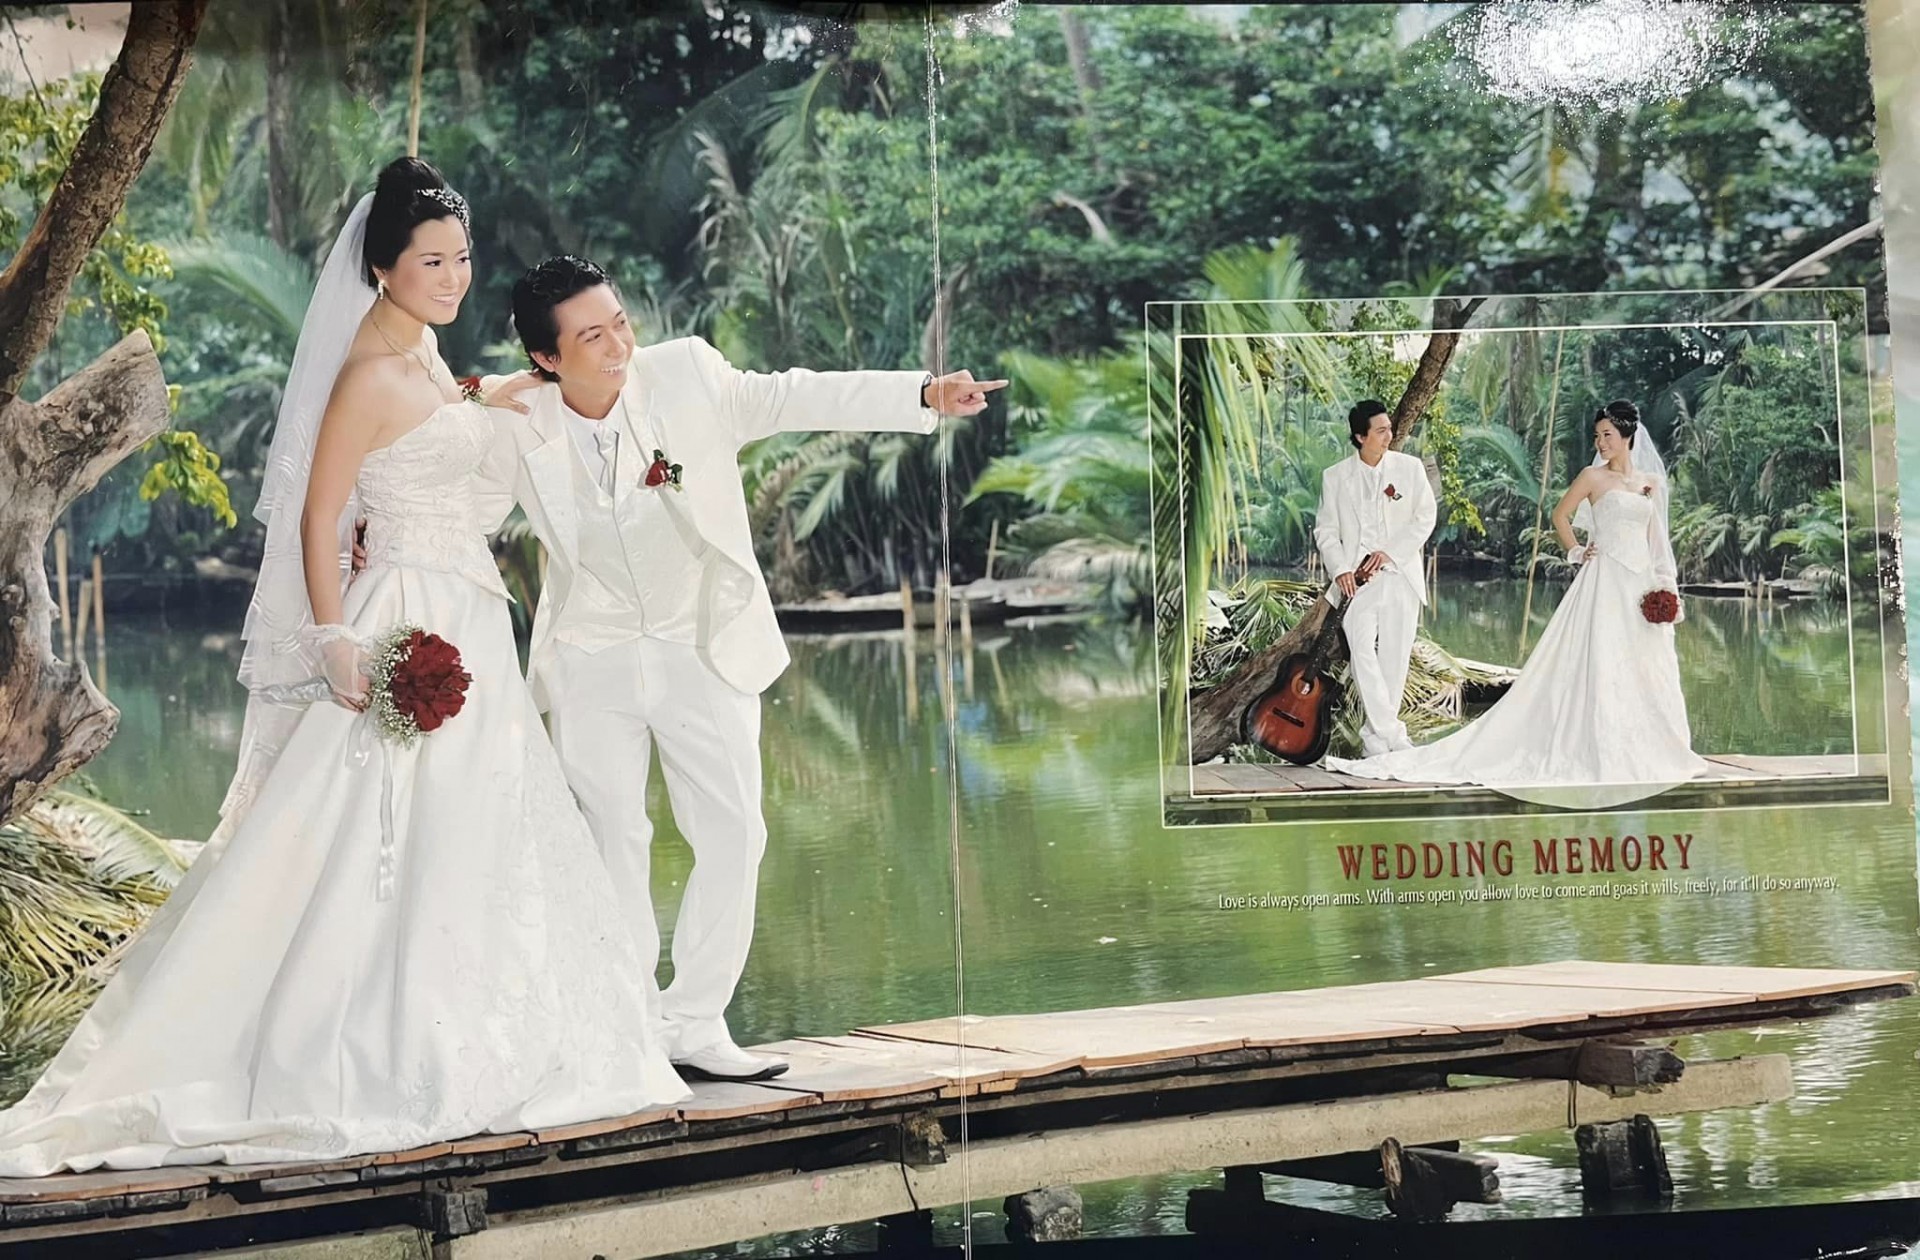 Hứa Minh Đạt hé lộ bộ ảnh cưới đa dạng phong cách với Lâm Vỹ Dạ cách đây 13 năm